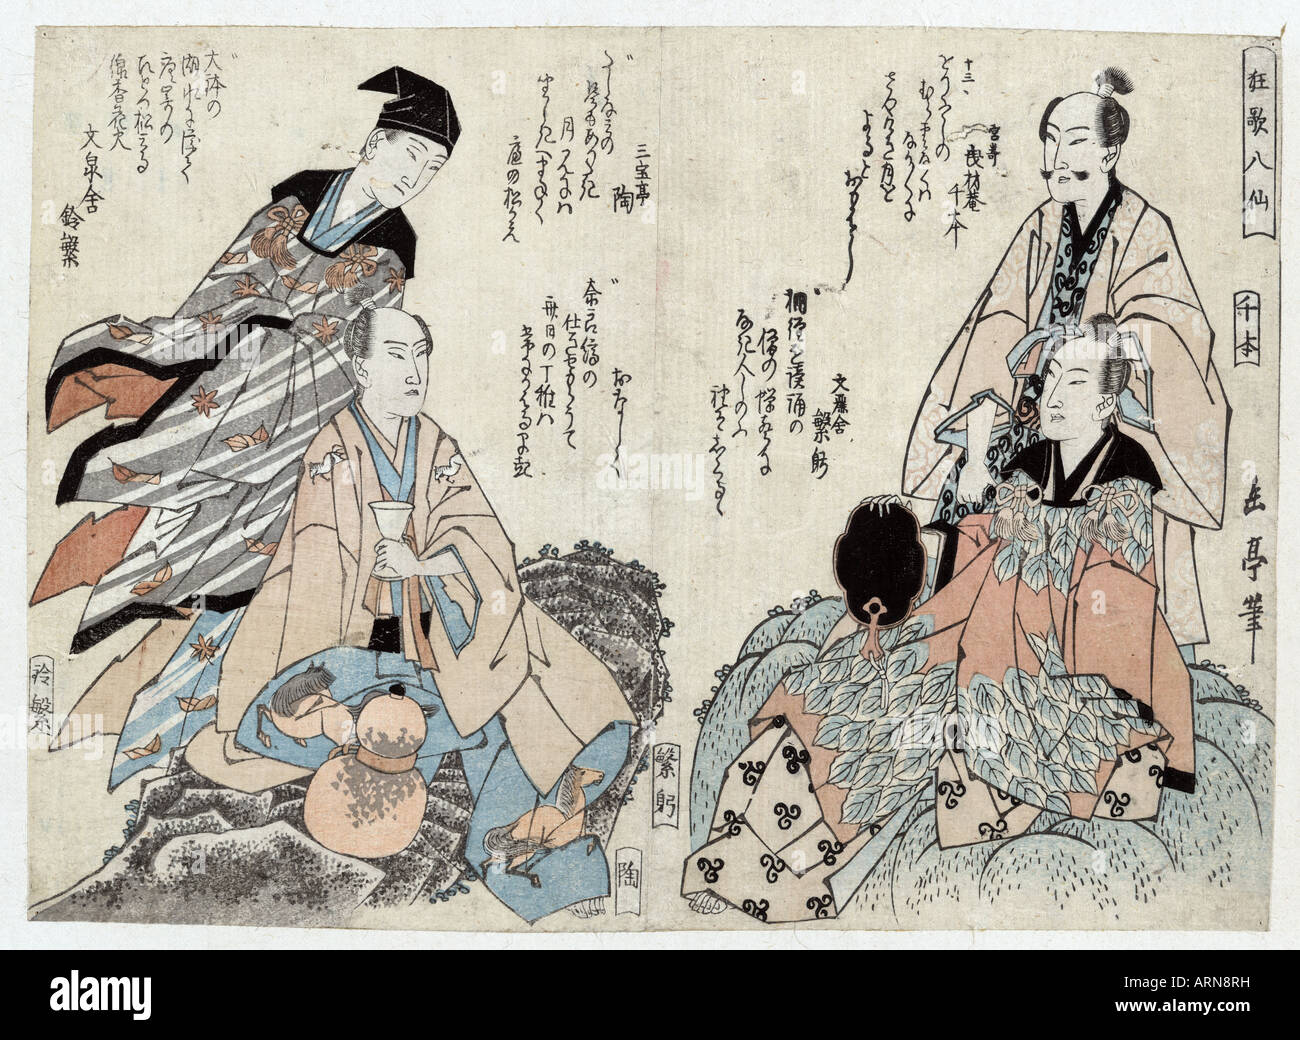 Kyoka hassen, huit poètes kyoka. [Entre 1818 et 1824], 1 tirage : gravure sur bois, couleur ; 18,2 x 25,4 cm., imprimer affiche quatre hommes soigneusement restauré Banque D'Images